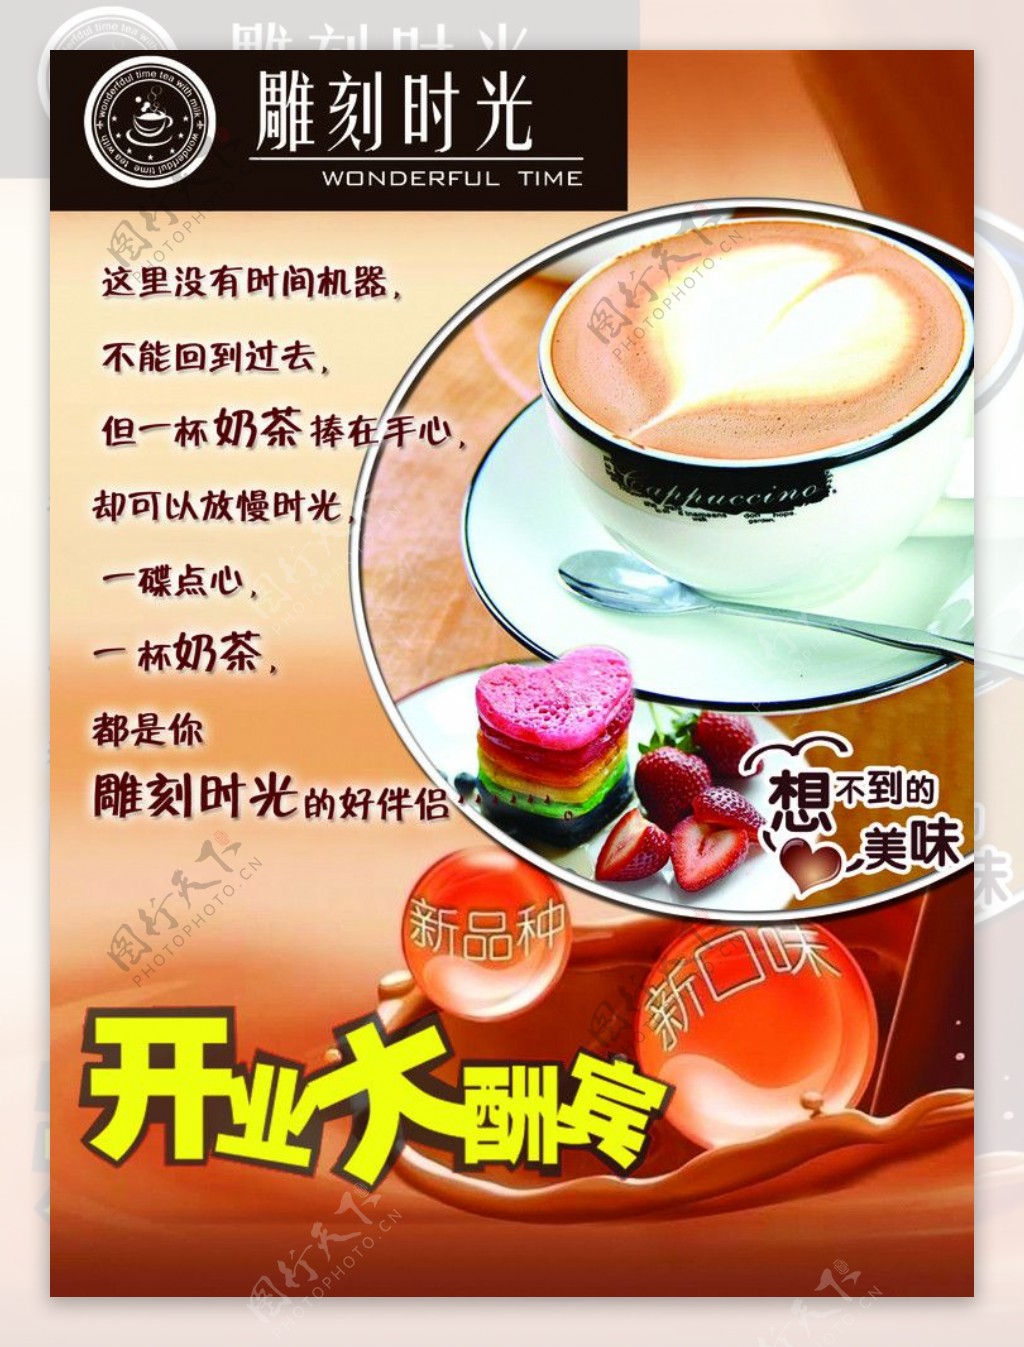 奶茶店开业海报图片